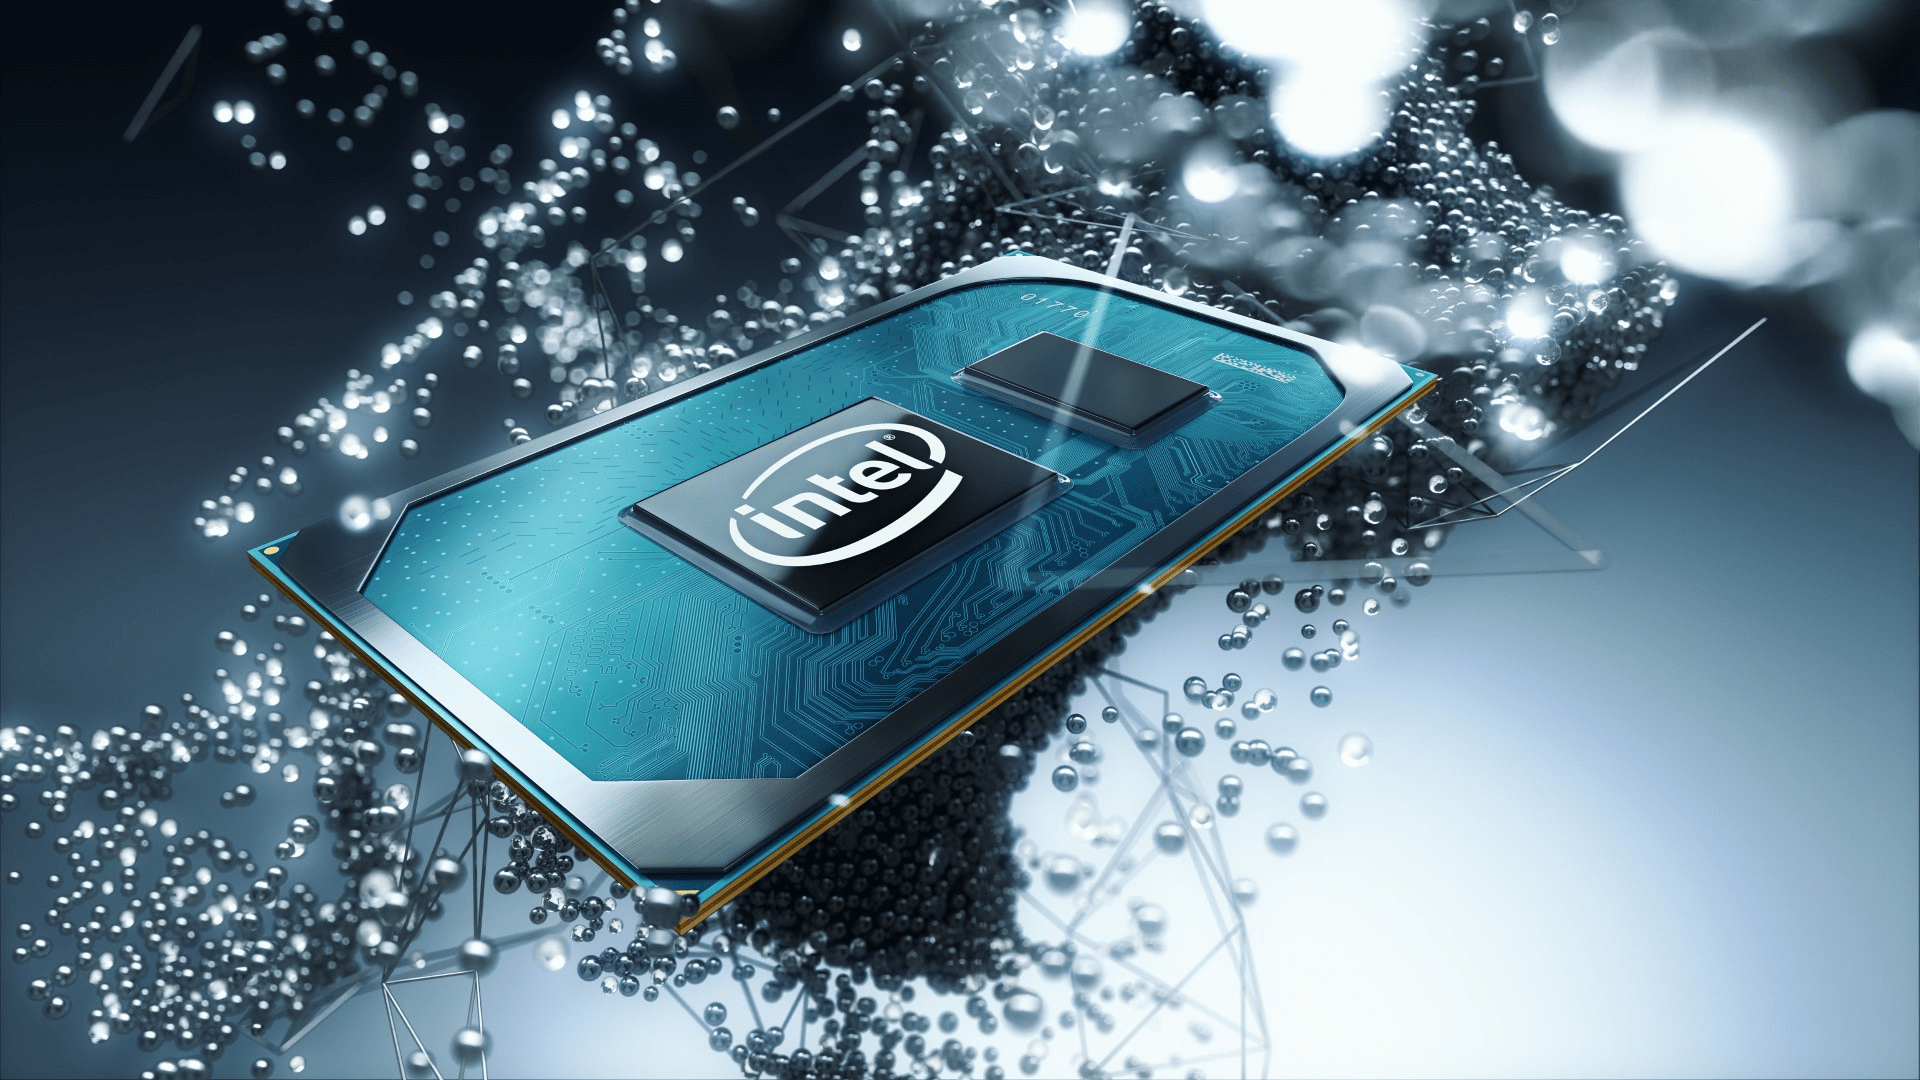 Intel Core I9 10980HK Vs Core I7 10750H